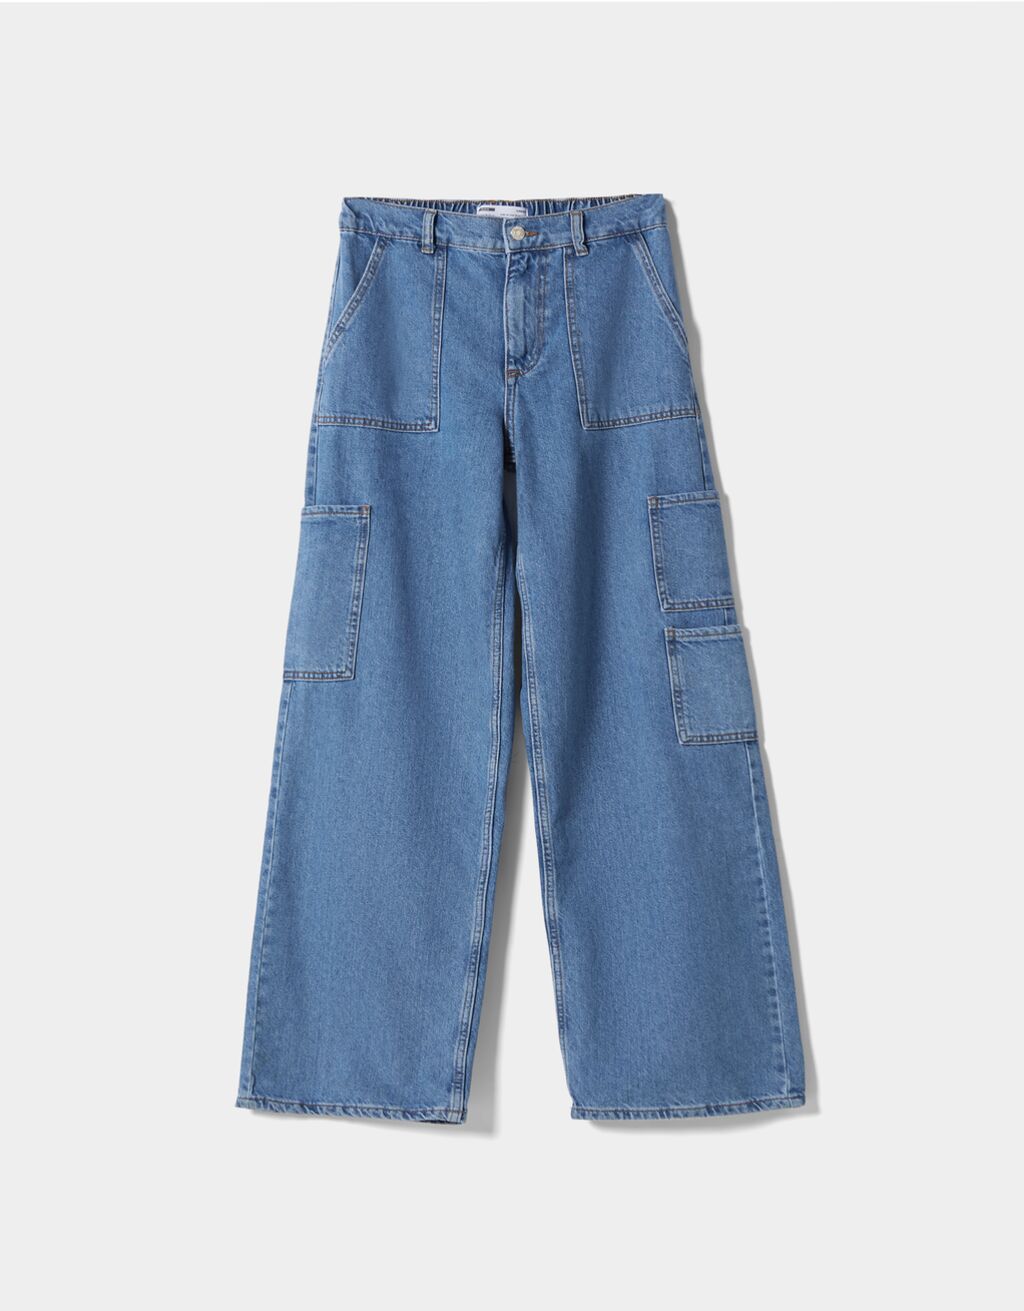 ג'ינס בסגנון דגמ"ח עם חגורה אלסטית